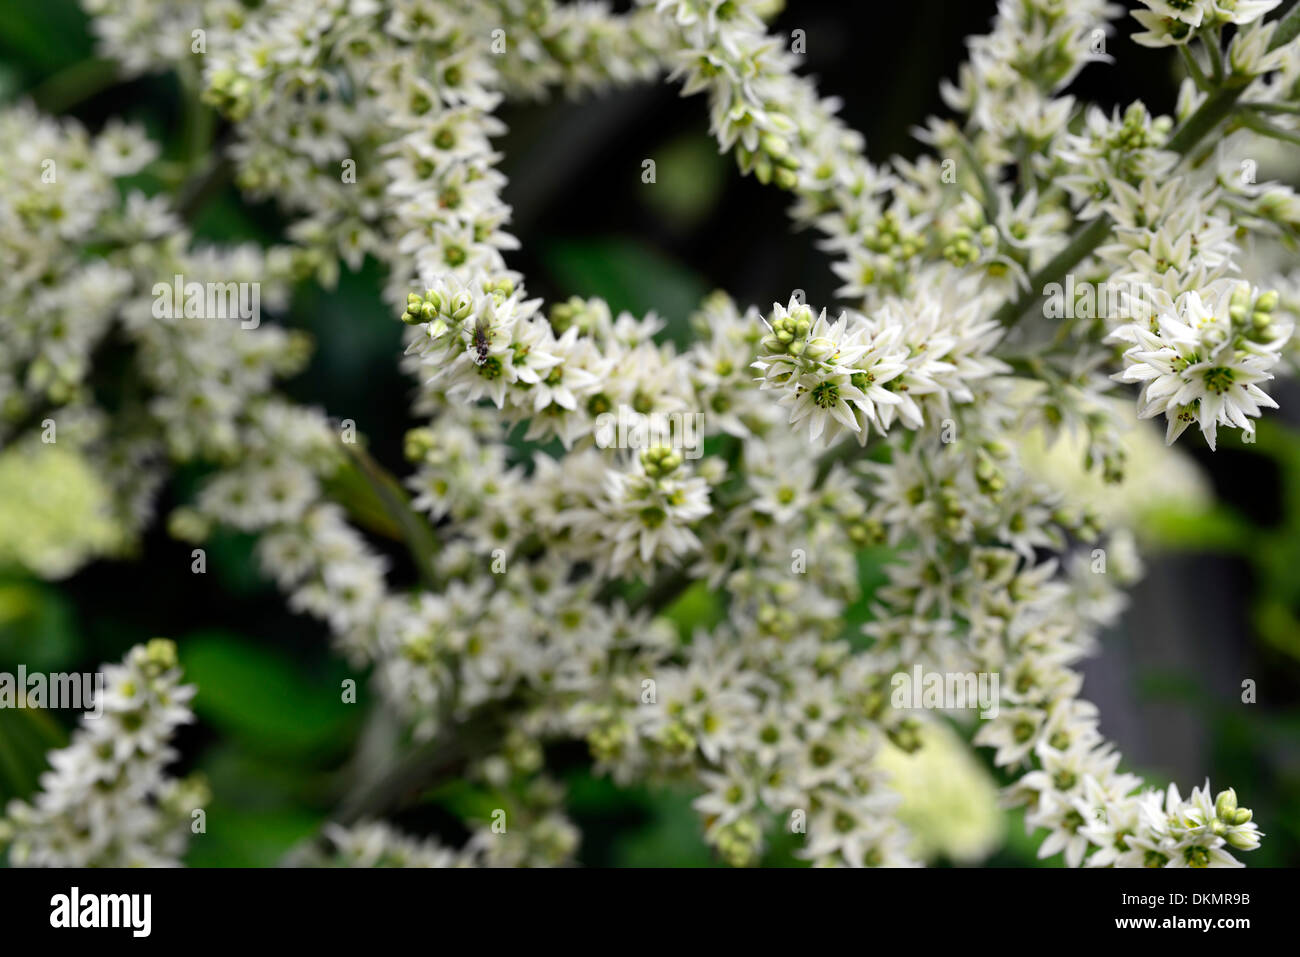 Veratrum Album Germer Europäische Weiße Nieswurz Creme weiße Pflanze Porträts Blumen Closeup selektiven Fokus Sommer Stockfoto